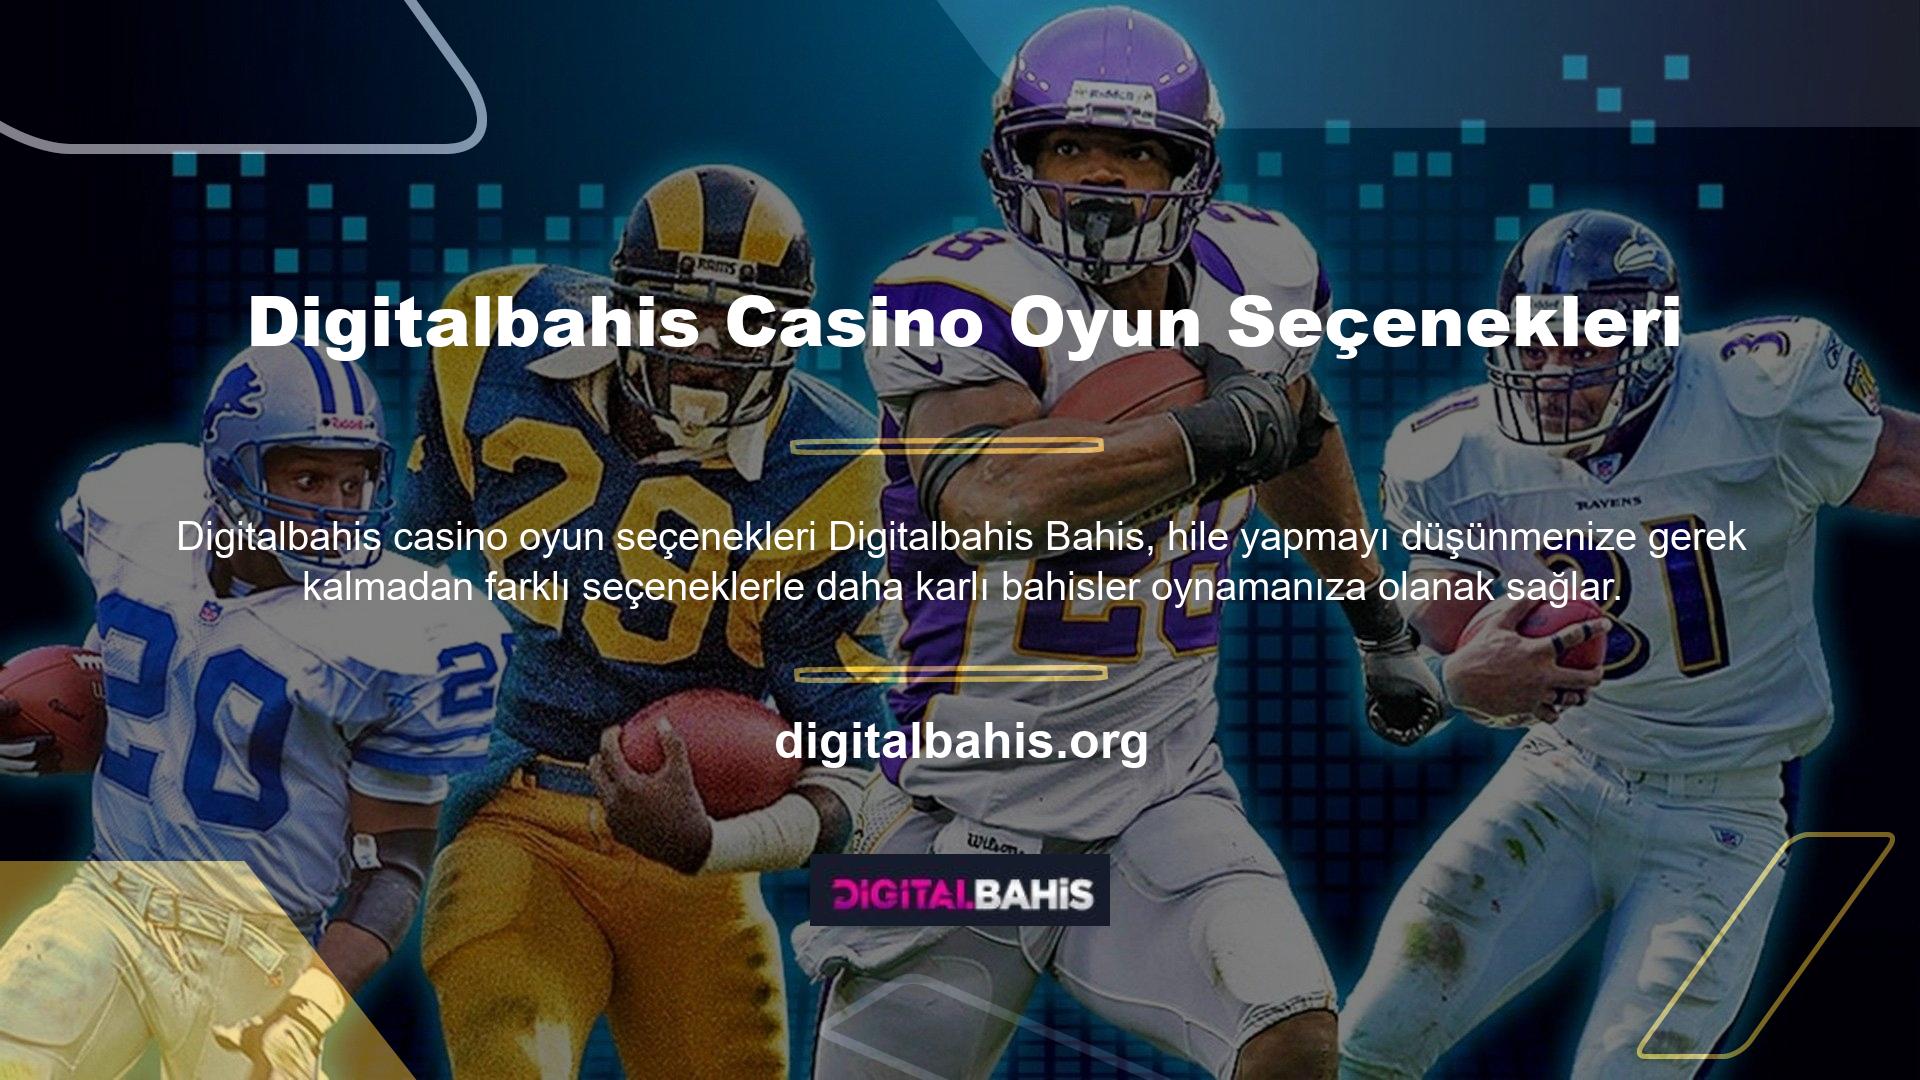 Digitalbahis Casino bonusları casino oyunlarının belirli bölümlerinde mevcuttur